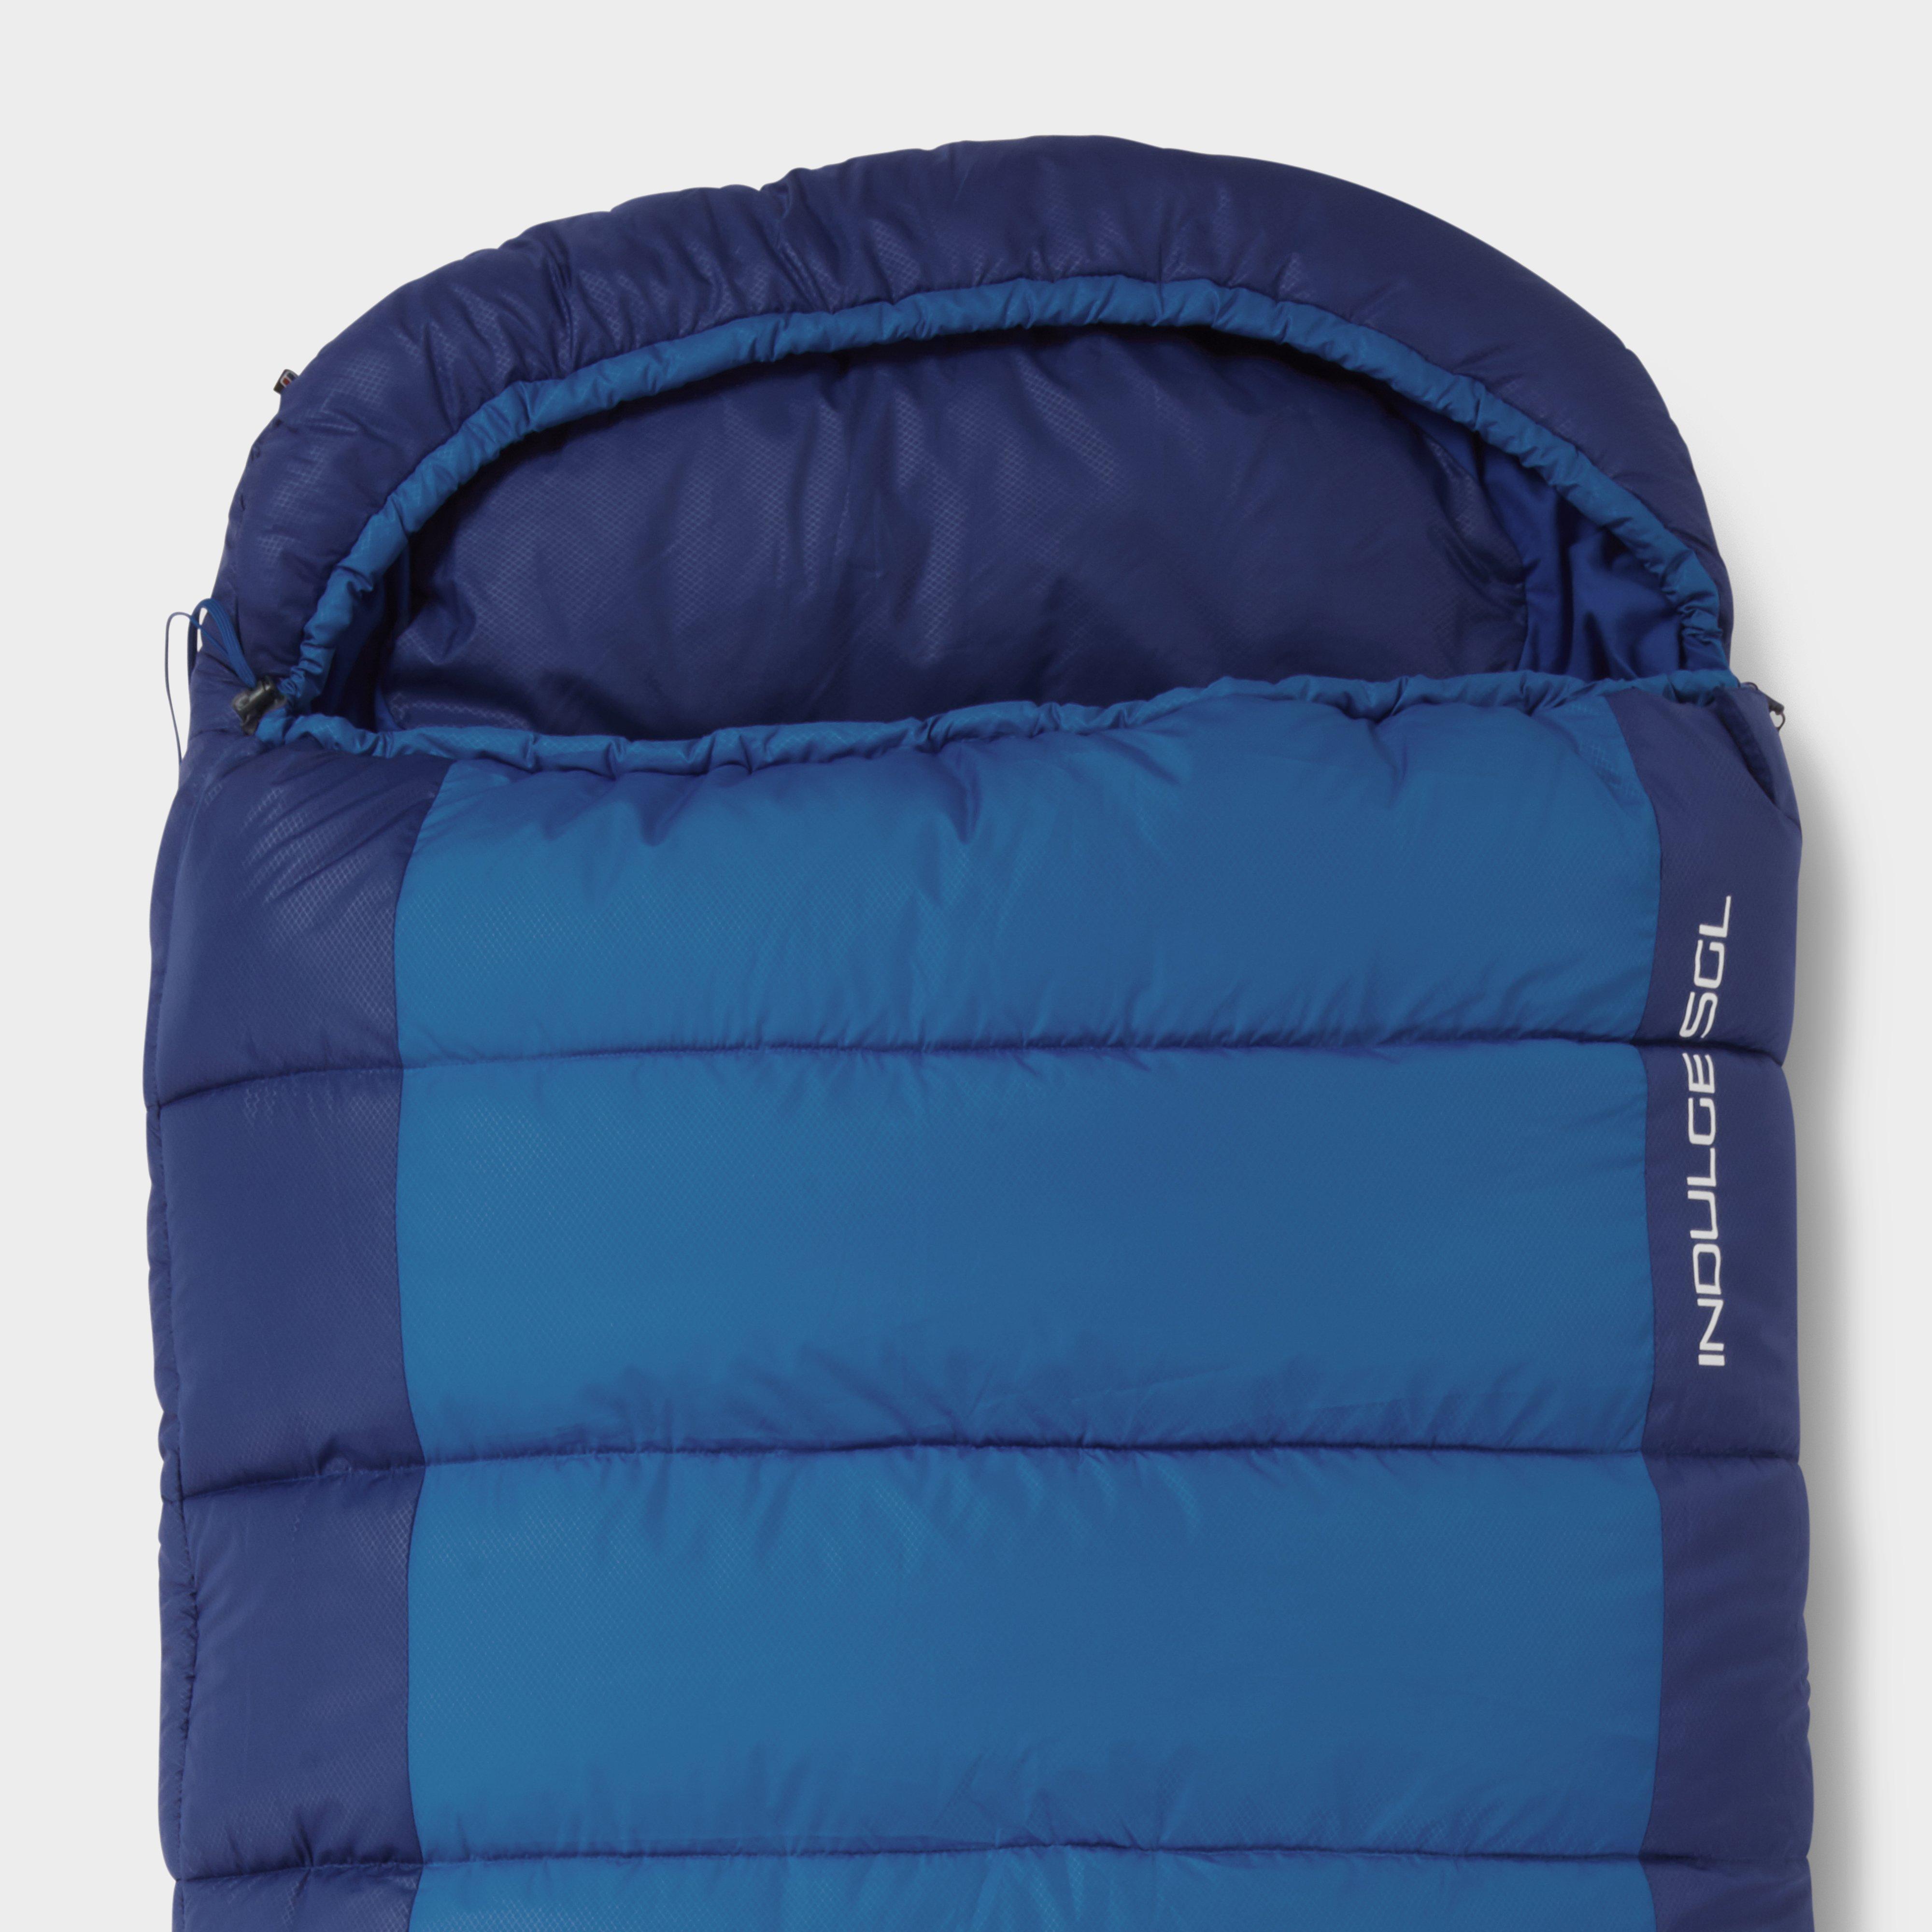  Berghaus Indulge Sleeping Bag, Blue